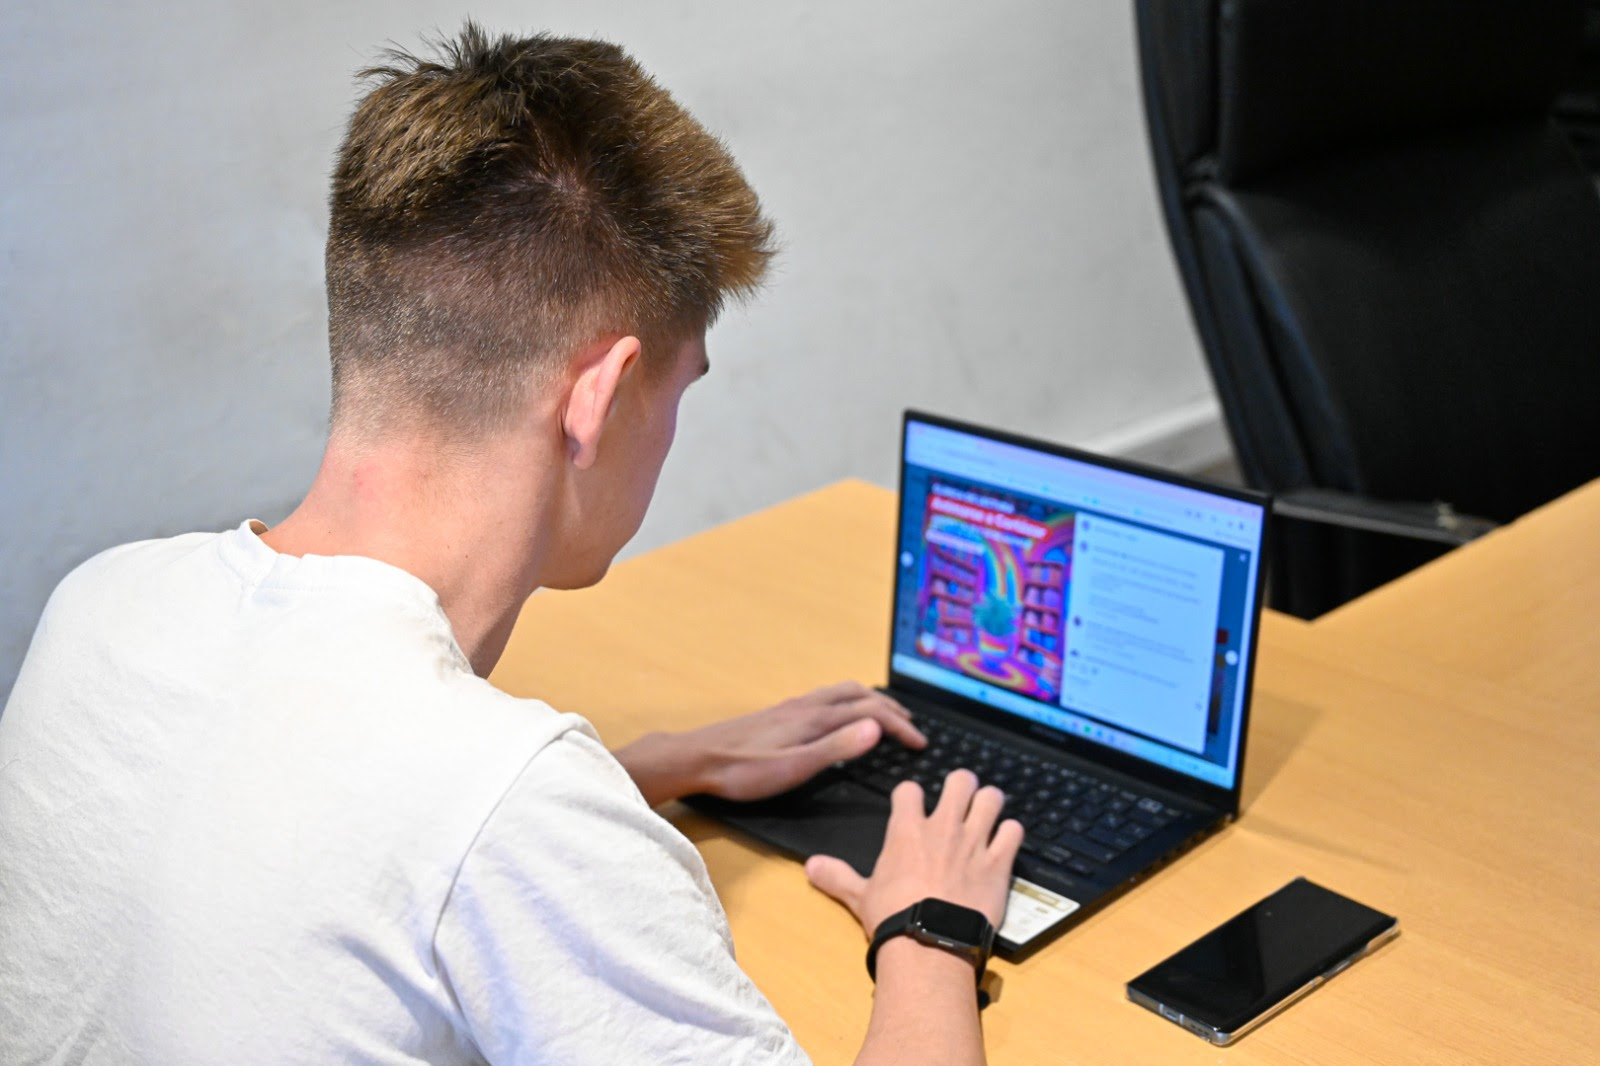 Una persona con una camiseta blanca, de espaldas a la cámara, utiliza una computadora portátil en un escritorio. En la pantalla, se observa la información sobre el evento "Animarse a Cortázar". Al lado de la computadora, hay un teléfono móvil negro sobre la mesa.